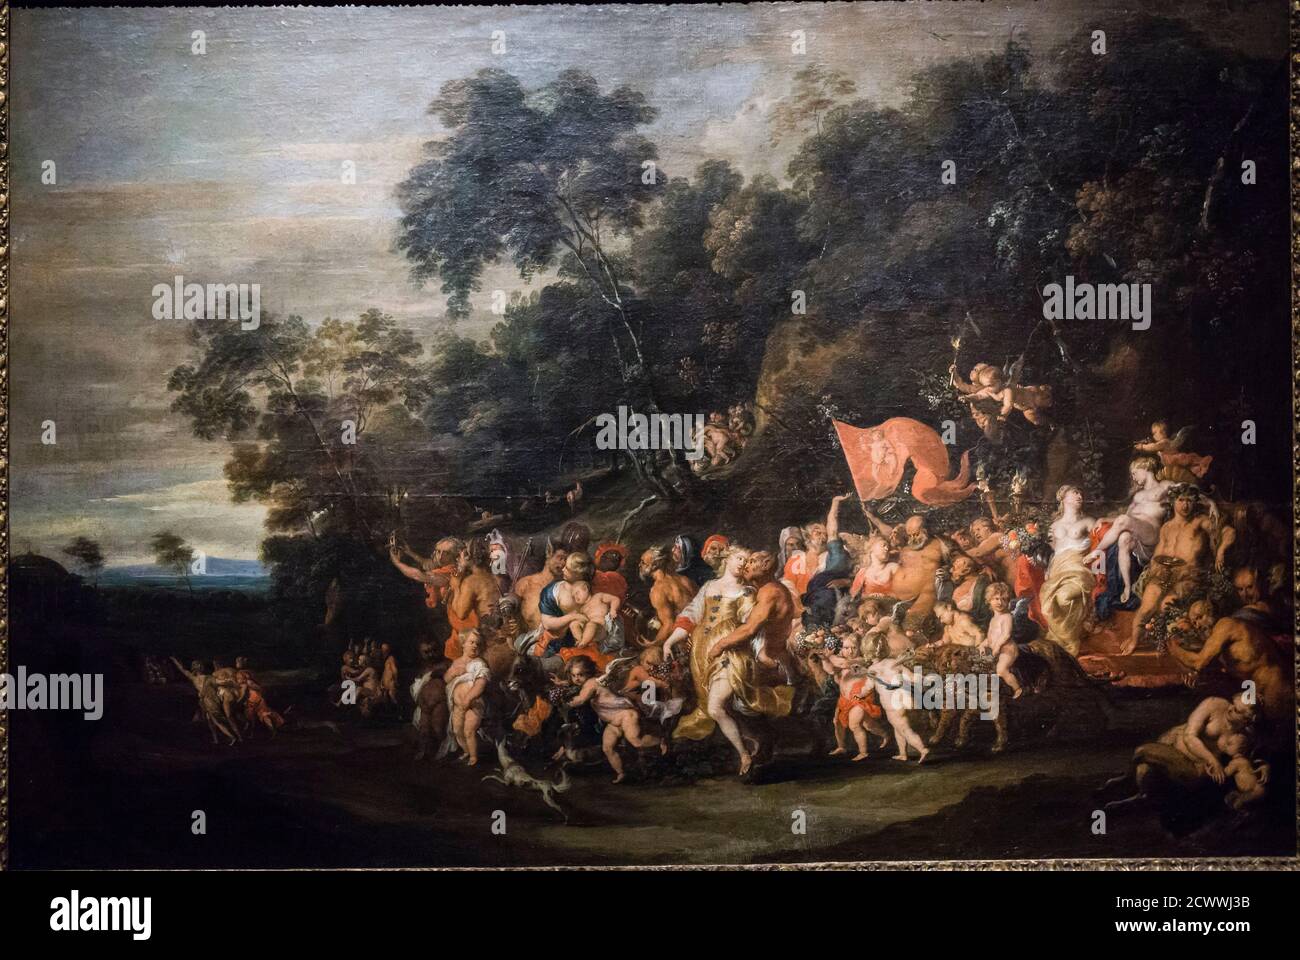 El triunfo de Baco, Jan Thomas van Yperen, 1650, óleo sobre tela, Museo Nacional de Bellas Artes (MNBA) ,Buenos Aires, republica Argentina, cono sur, Stock Photo